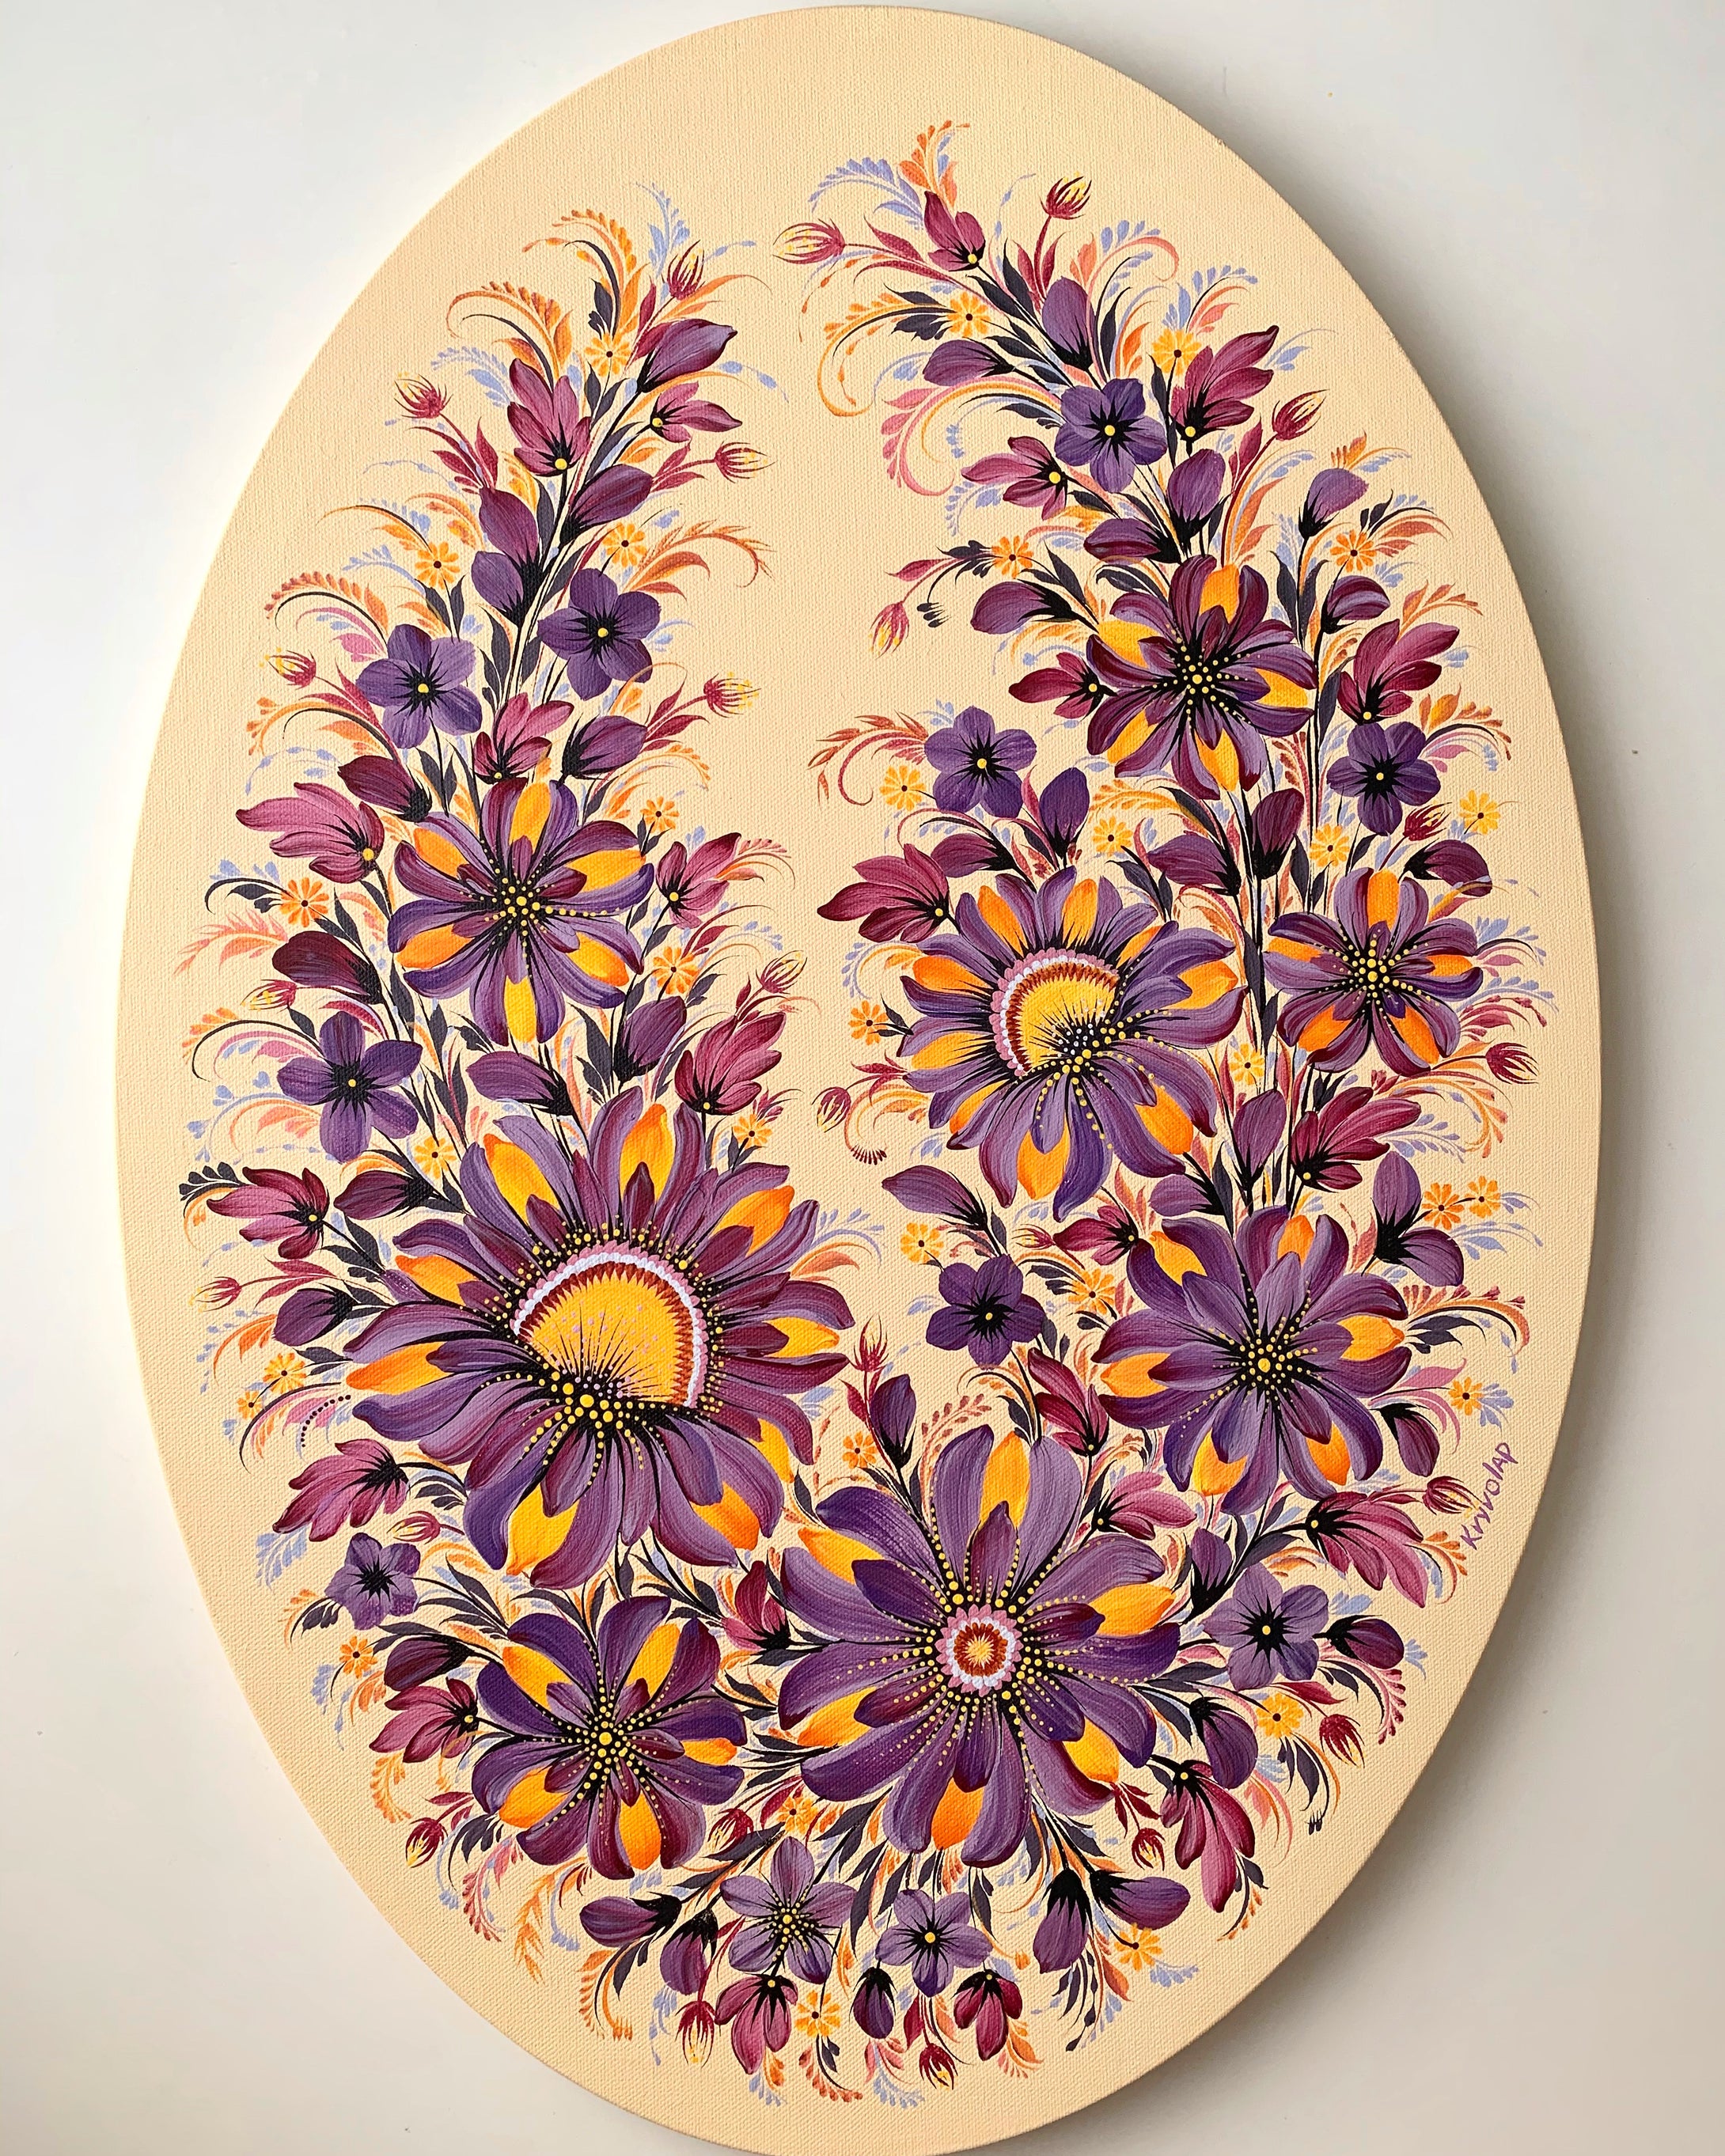 MOONRISE MYSTIQUE FLOWERS - 18 in x 26 in (45.7 cm x 66 cm)